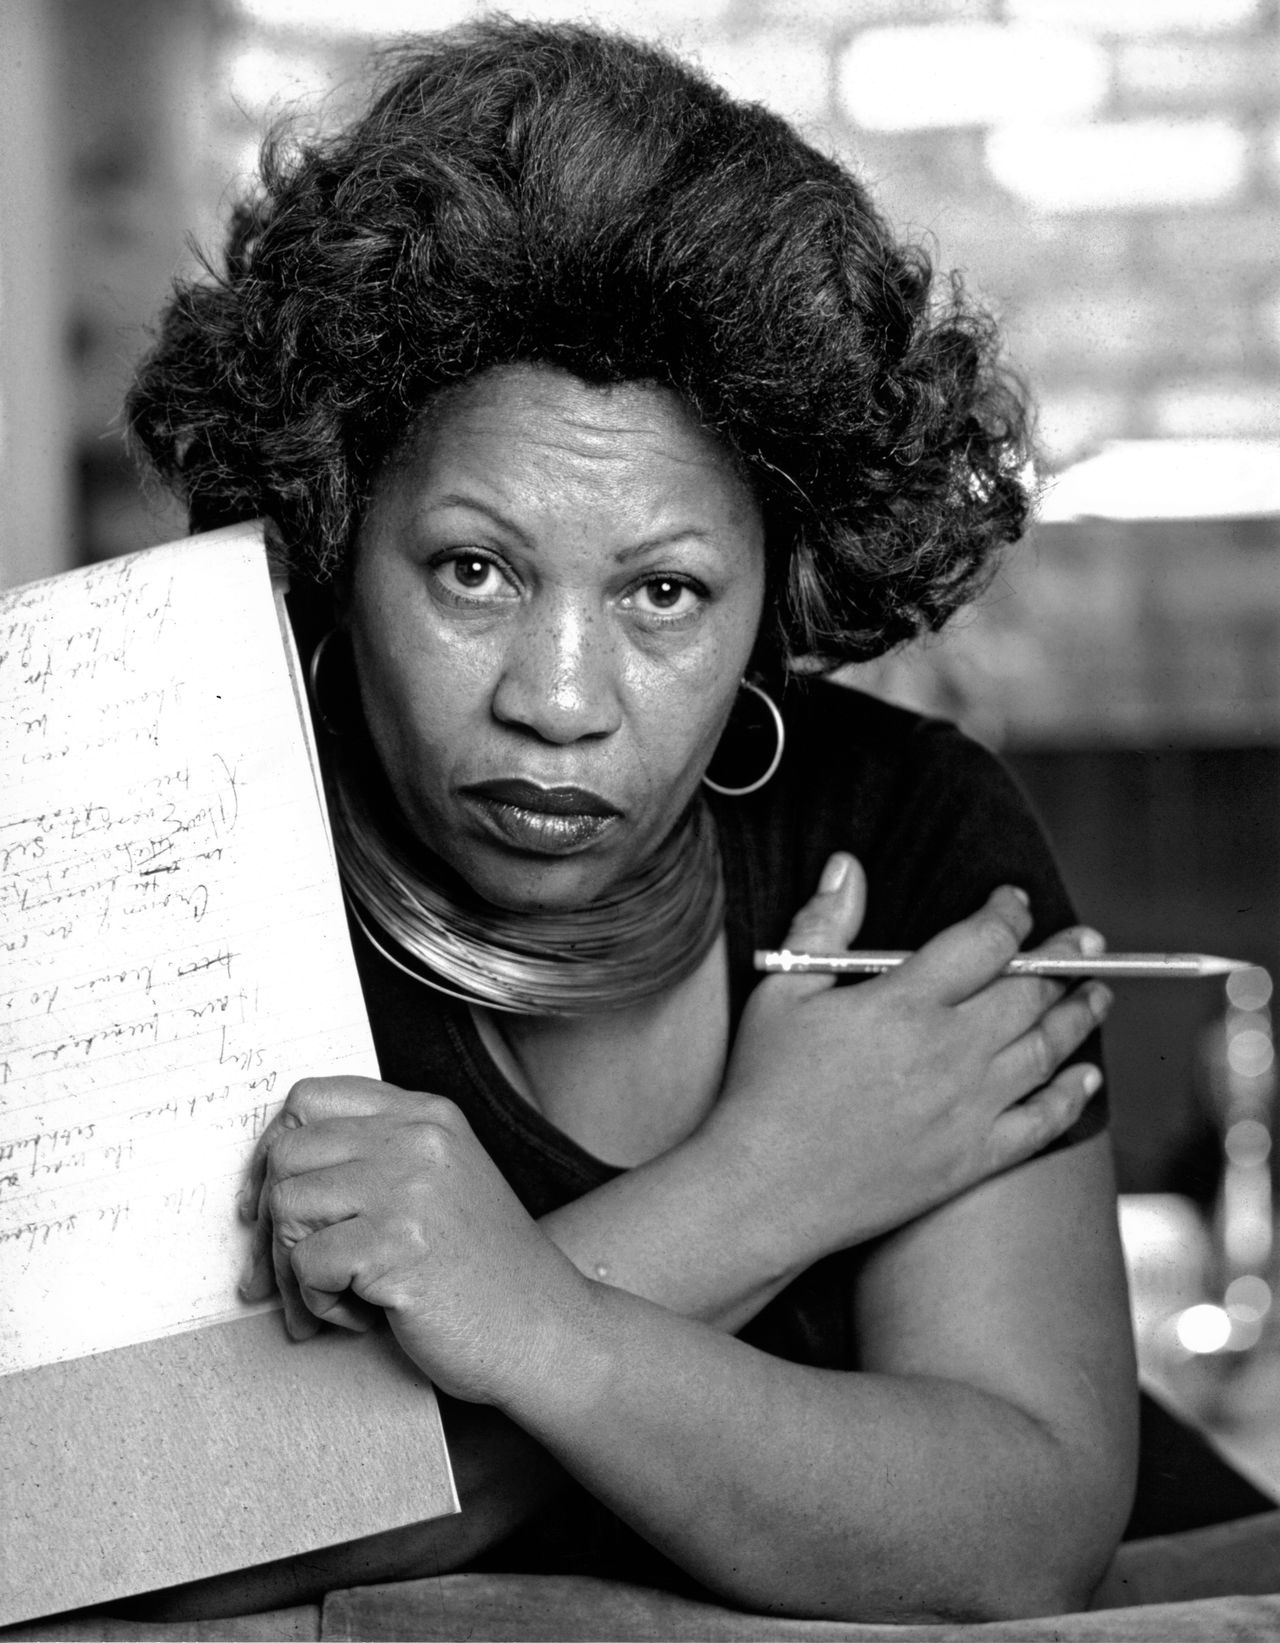 Lasciate stare i necrologi sciropposi. Vi dico io chi era davvero Toni Morrison: autorevole, sprezzante, superiore, una dea furiosa, una strega razzista della letteratura altrui